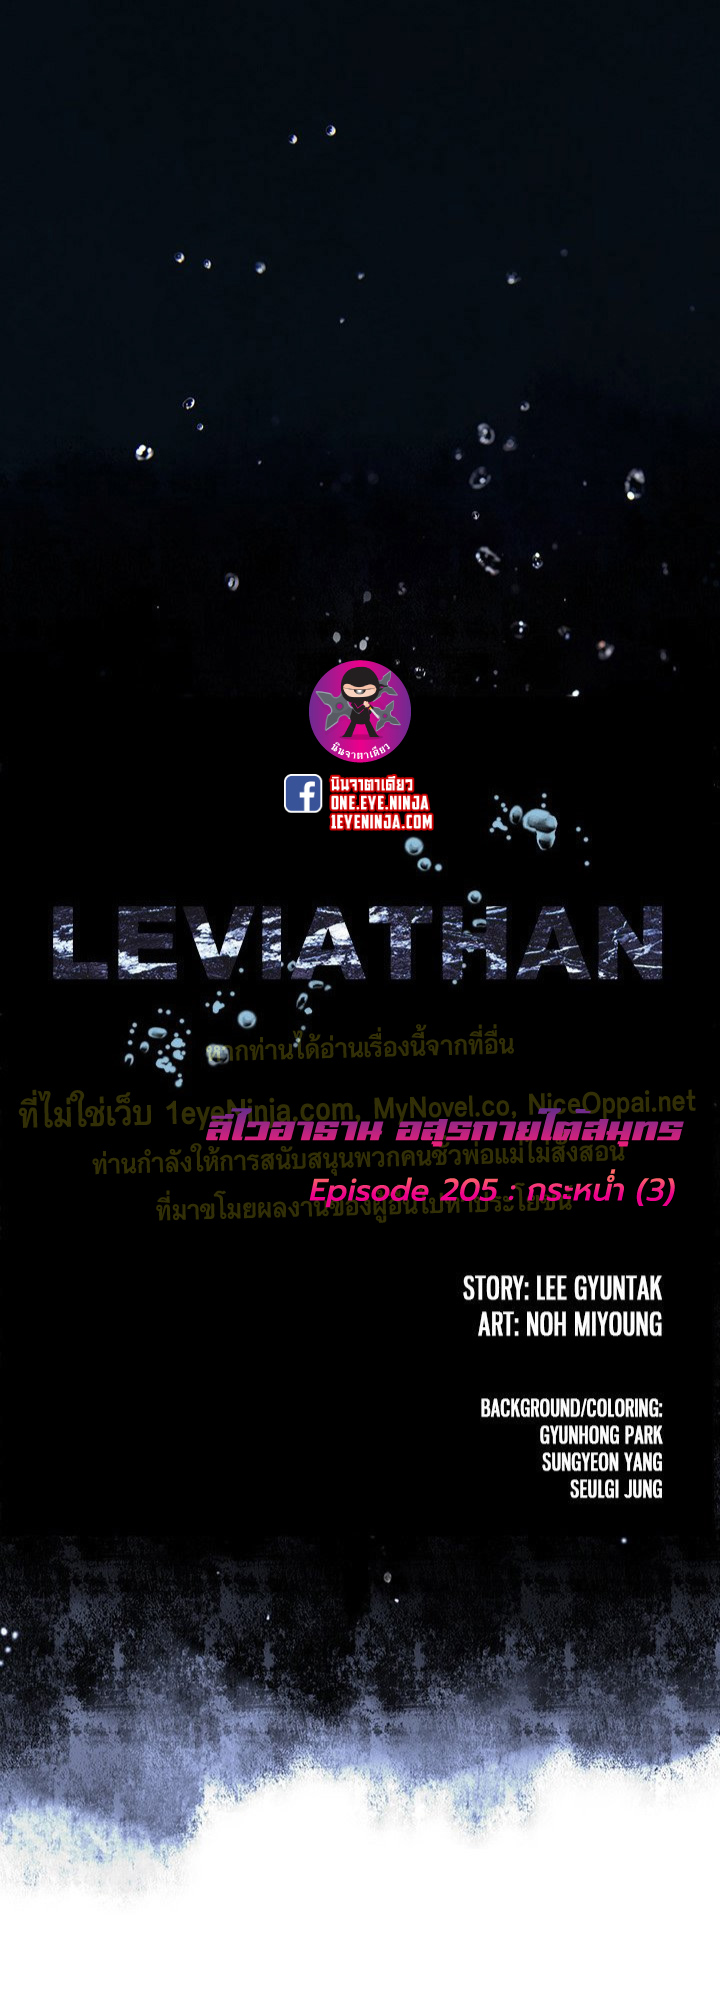 Leviathan205 01